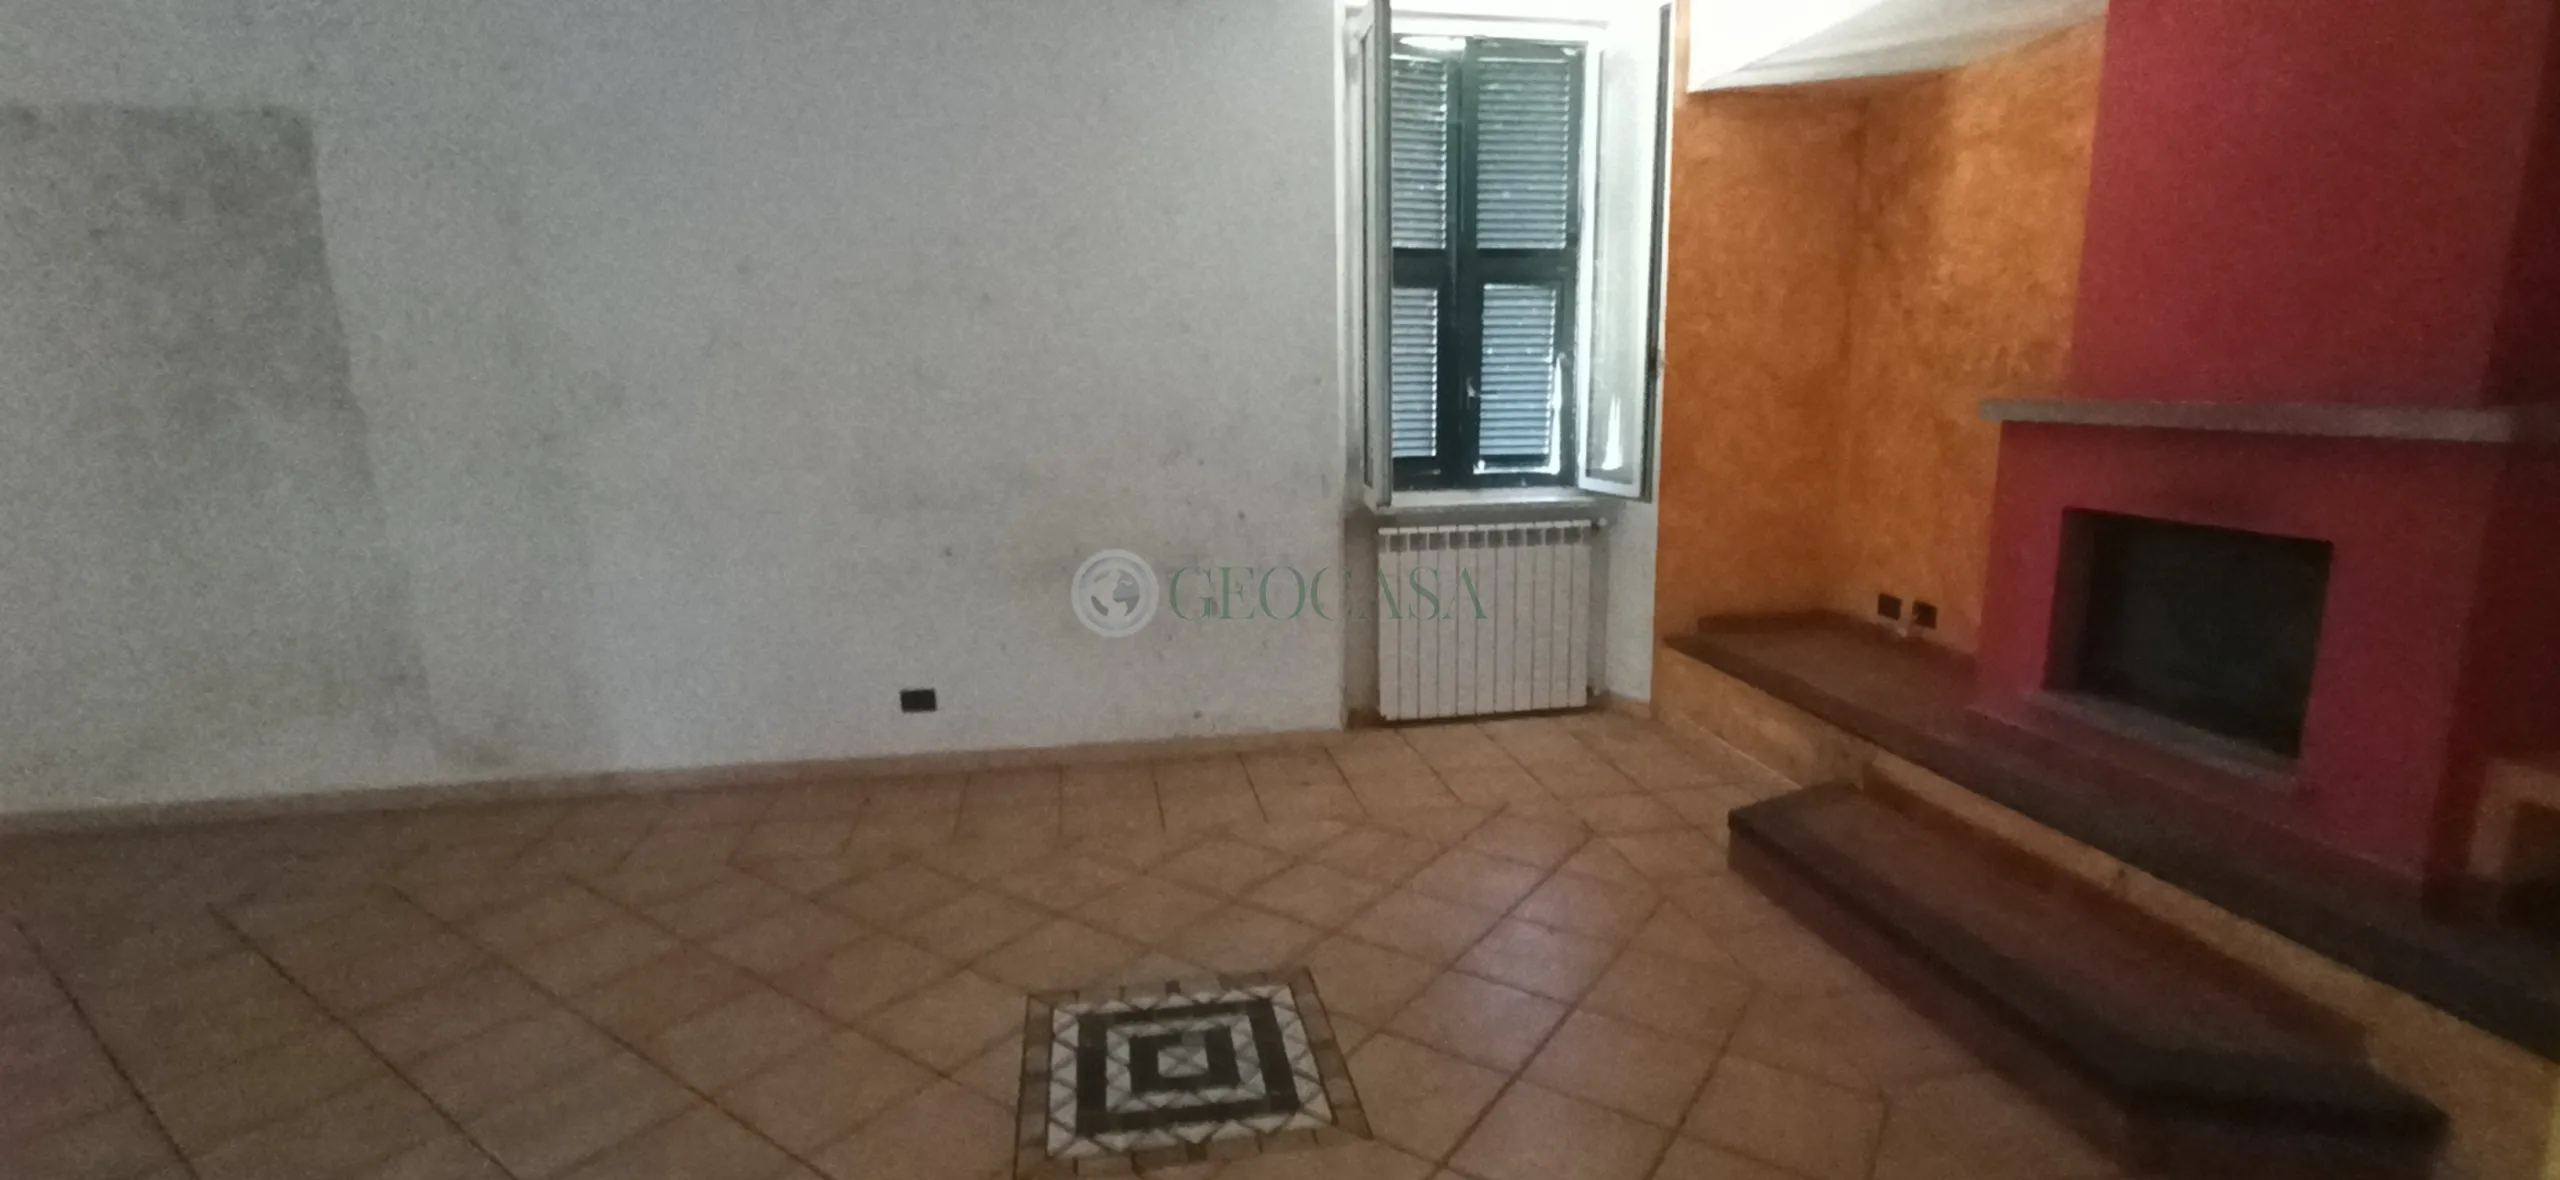 Immagine per Villa bifamiliare in vendita a Licciana Nardi via Piazzale Della Stazione 1